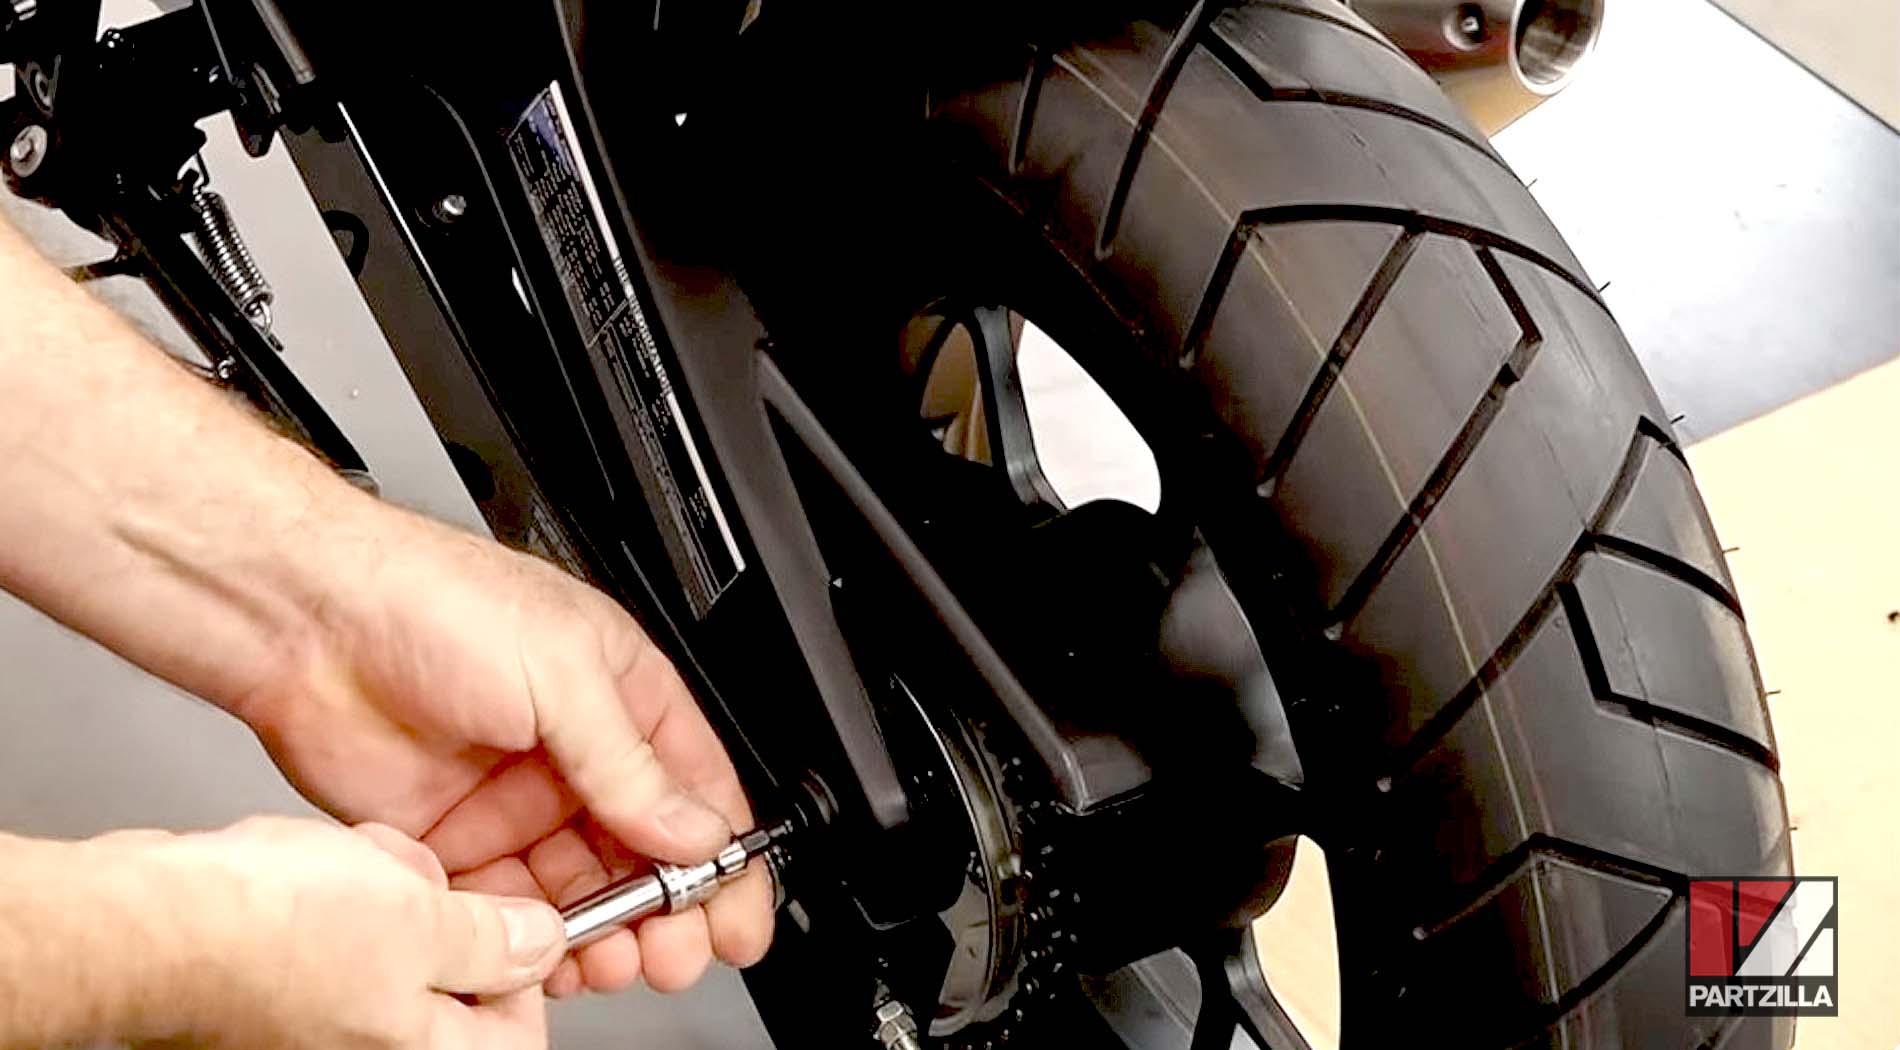 2018 Honda Grom ABS 125 Ohlins aftermarket suspension upgrades shock absorber removal